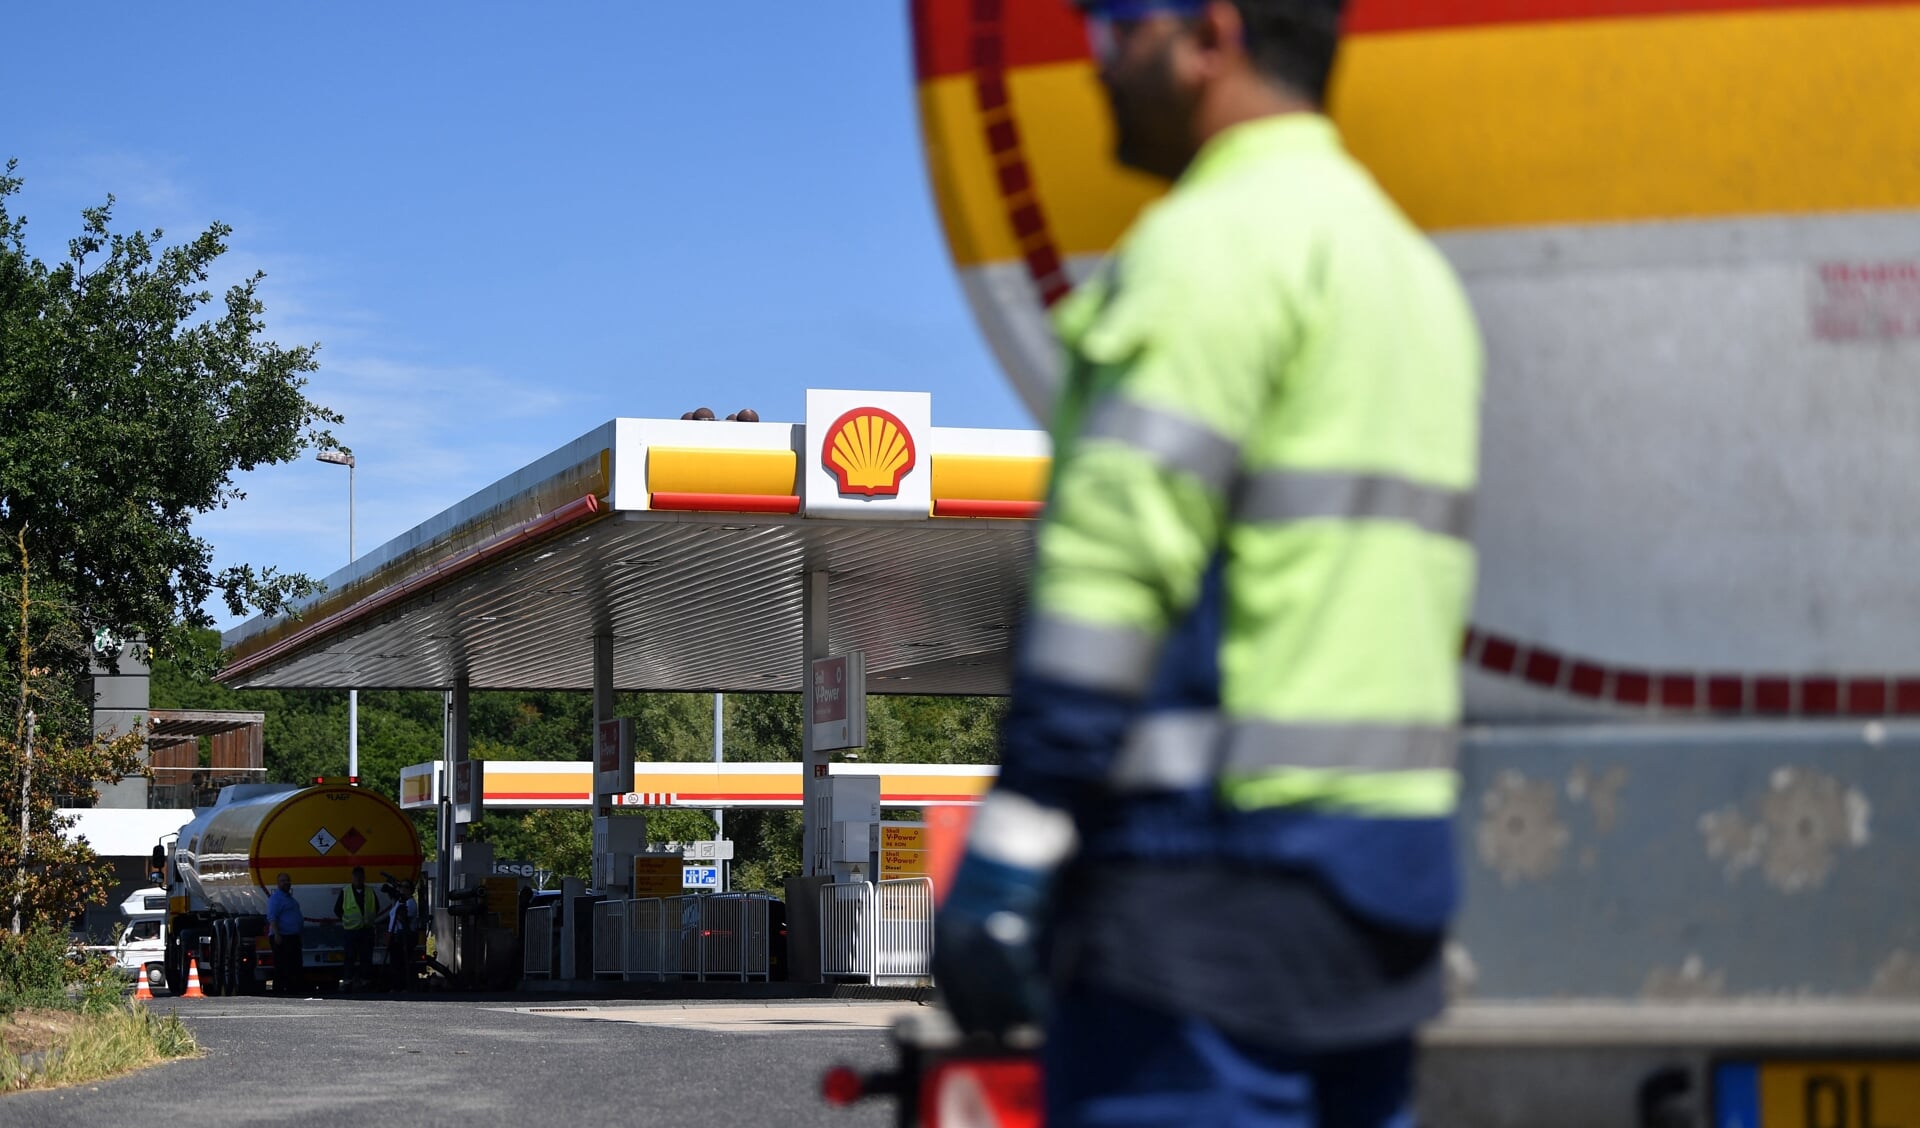 Olie- en gasconcern Shell boekte in het tweede kwartaal van dit jaar een recordwinst van 18 miljard dollar. 